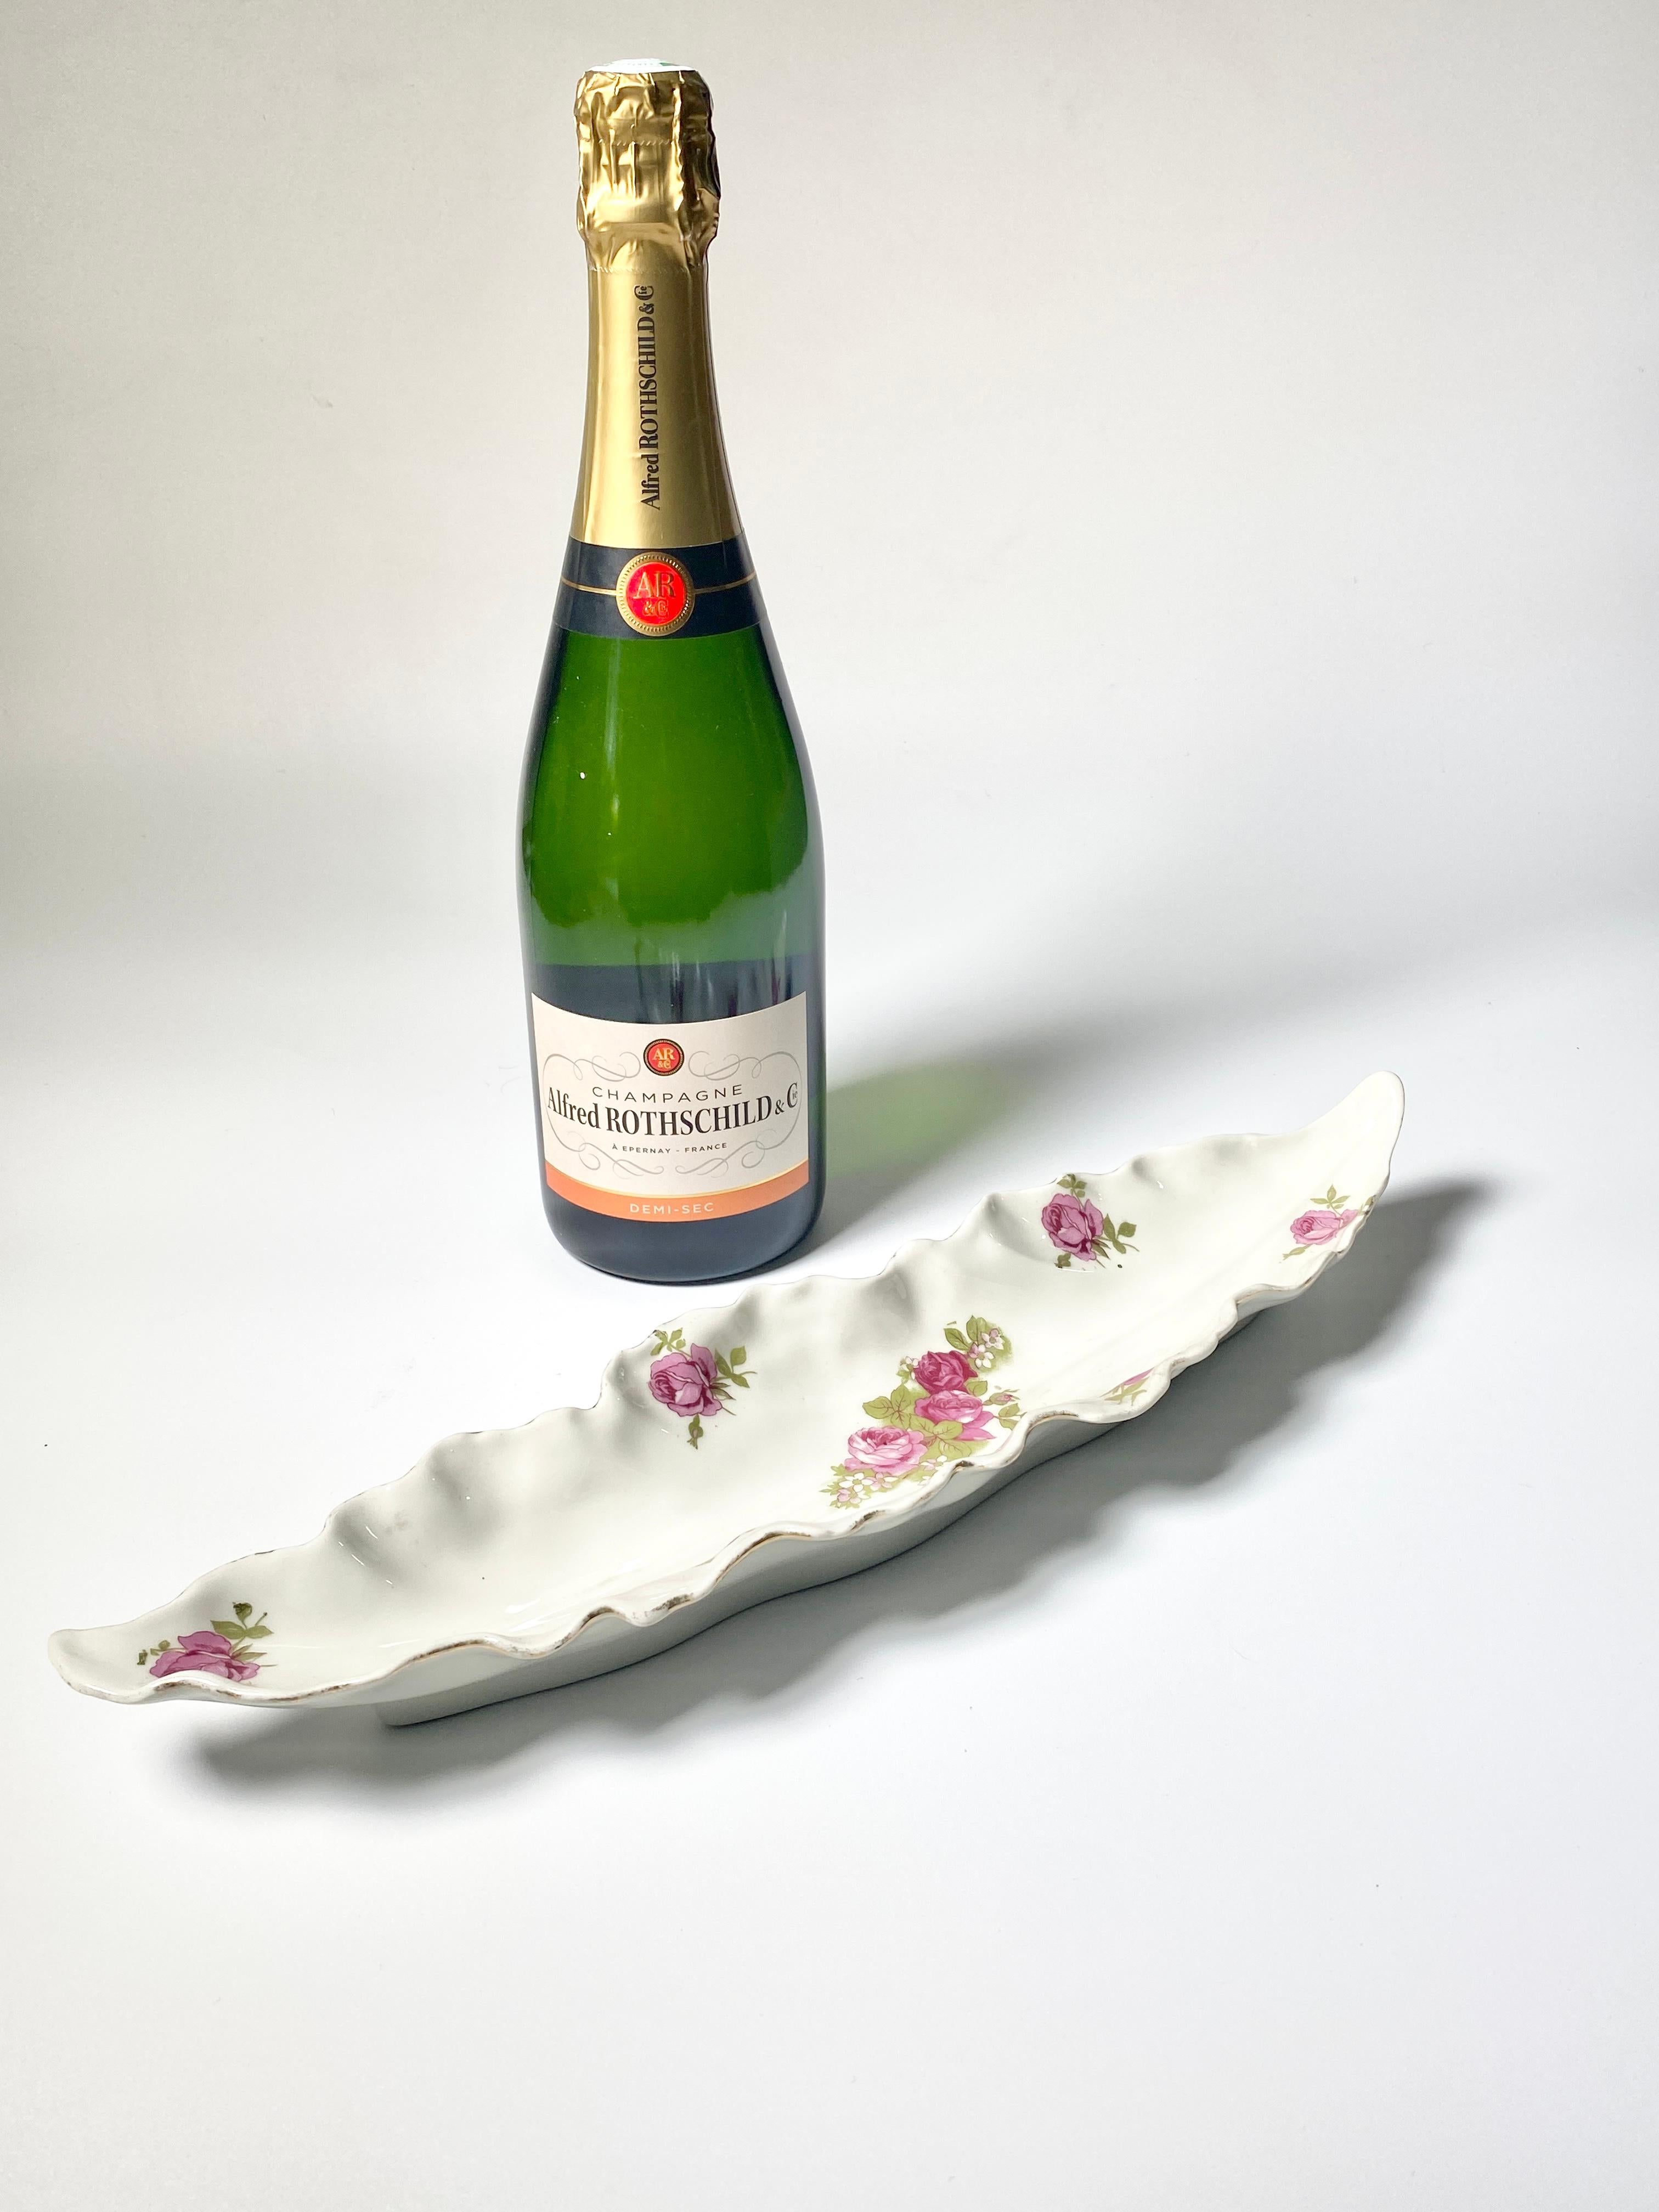 Cette porcelaine est un plat, qui a été fabriqué en France, vers 1970.
Le motif décoratif est constitué de roses, et la couleur est blanche et rose.